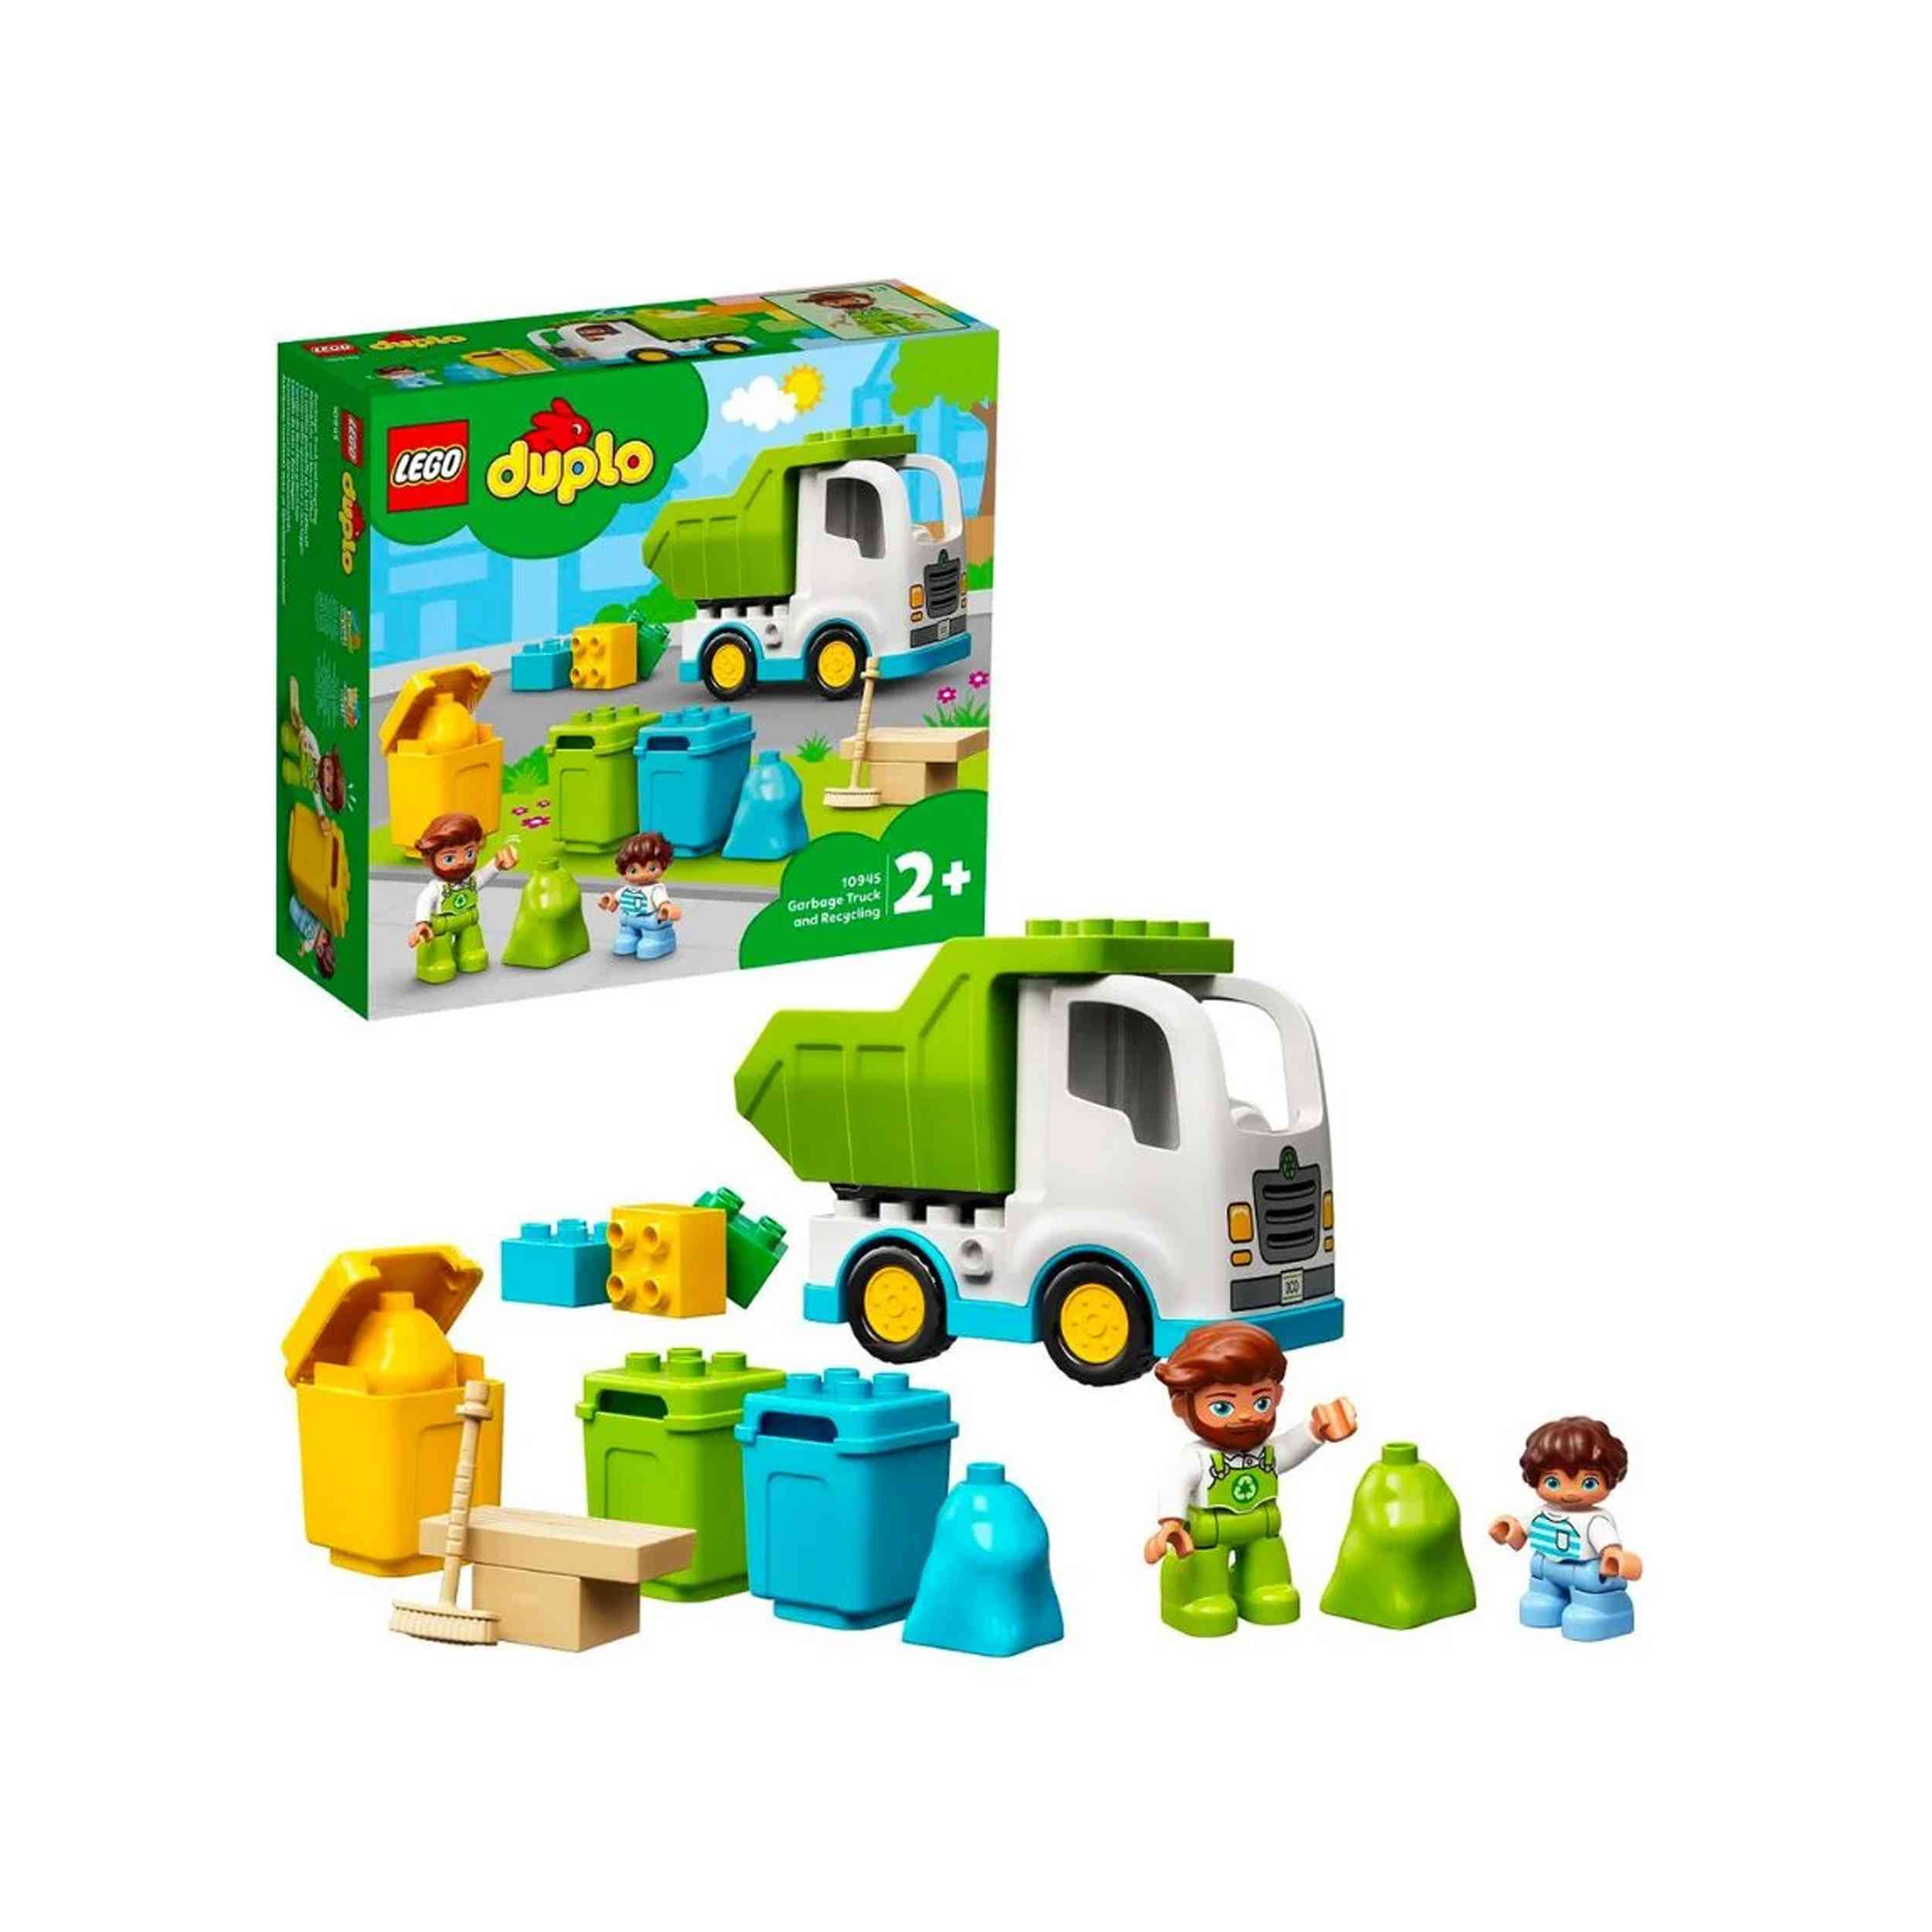 Lego Duplo - Garbage Truck